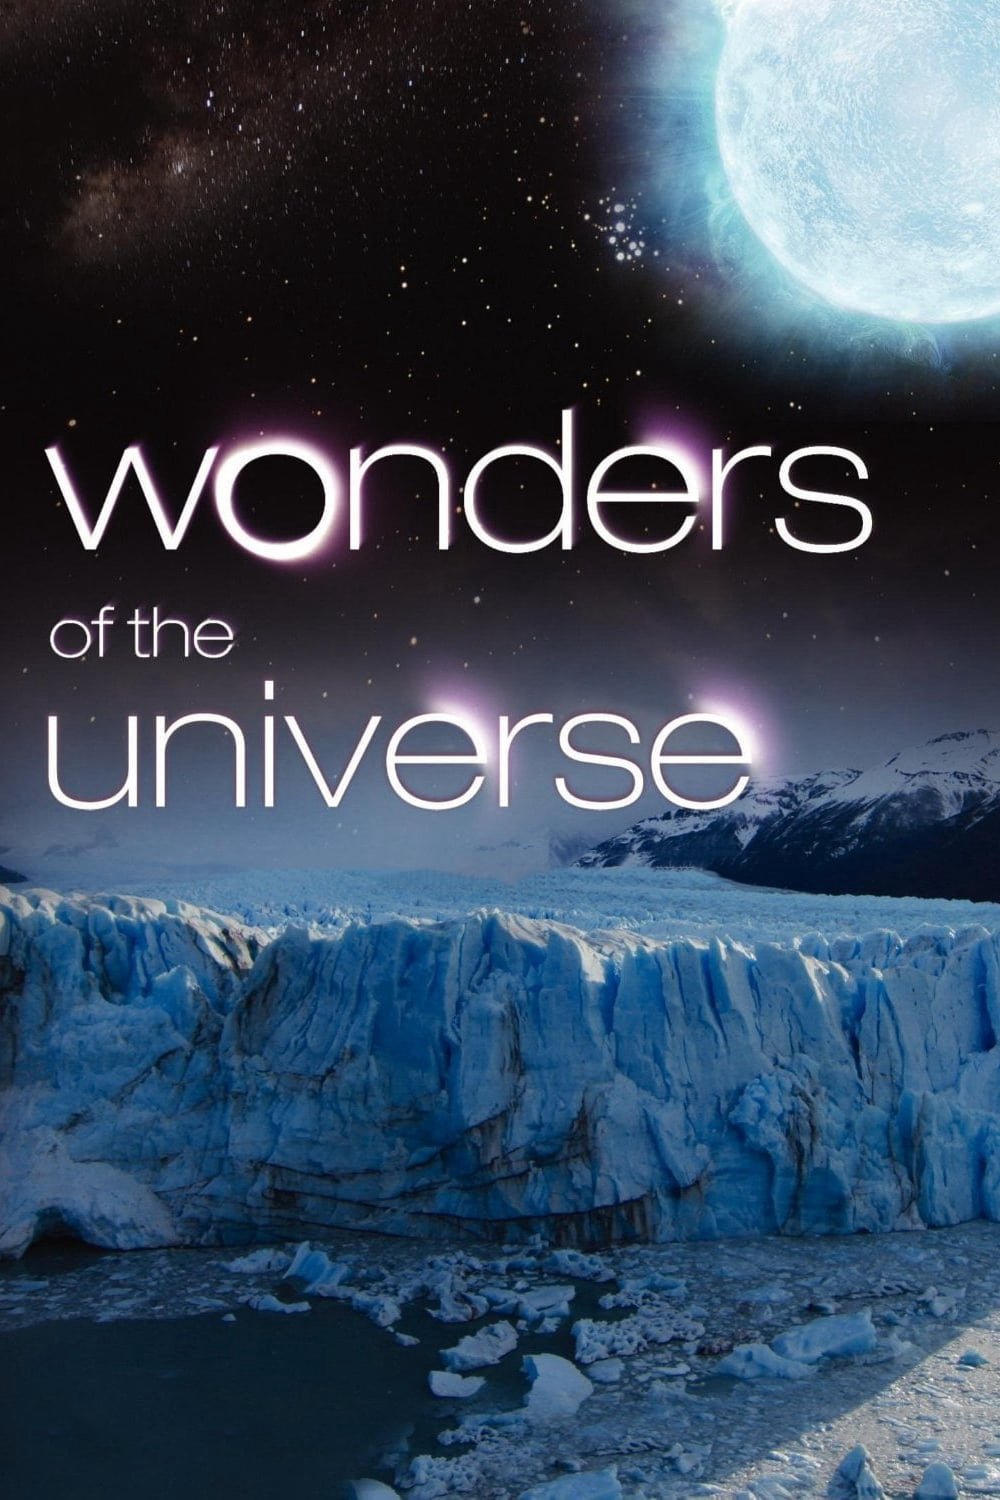 Wonders of the Universe (Wonders of the Universe) [2011]